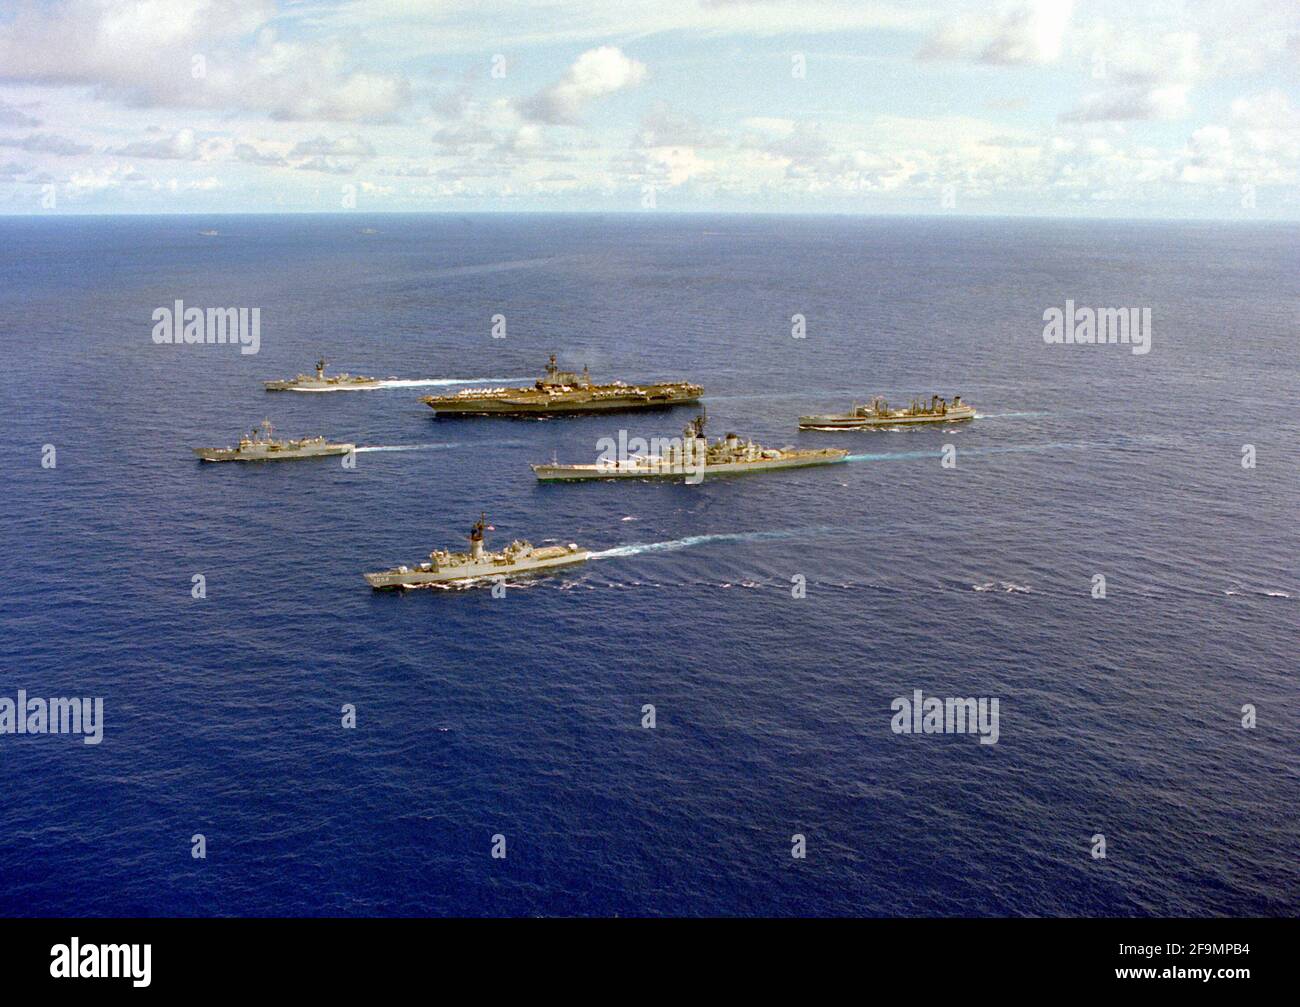 Eine Hafenansicht von Schiffen des Flugzeugträgers USS MIDWAY (CV-41), die in Formation unterwegs sind. Zu den Schiffen gehören von links die Fregatte USS MEYERKOD (FF-1058) und die Fregatte USS JOHN A. MOORE (FFG-19), vordere Reihe; das Schlachtschiff USS NEW JERSEY (BB-62), der Flugzeugträger USS MIDWAY (CV-41) und die Fregatte USS FRANCIS HAMMOND (FF-1067), Mitte und der Flottenöler UST-MISPILAO-105 hinten Stockfoto